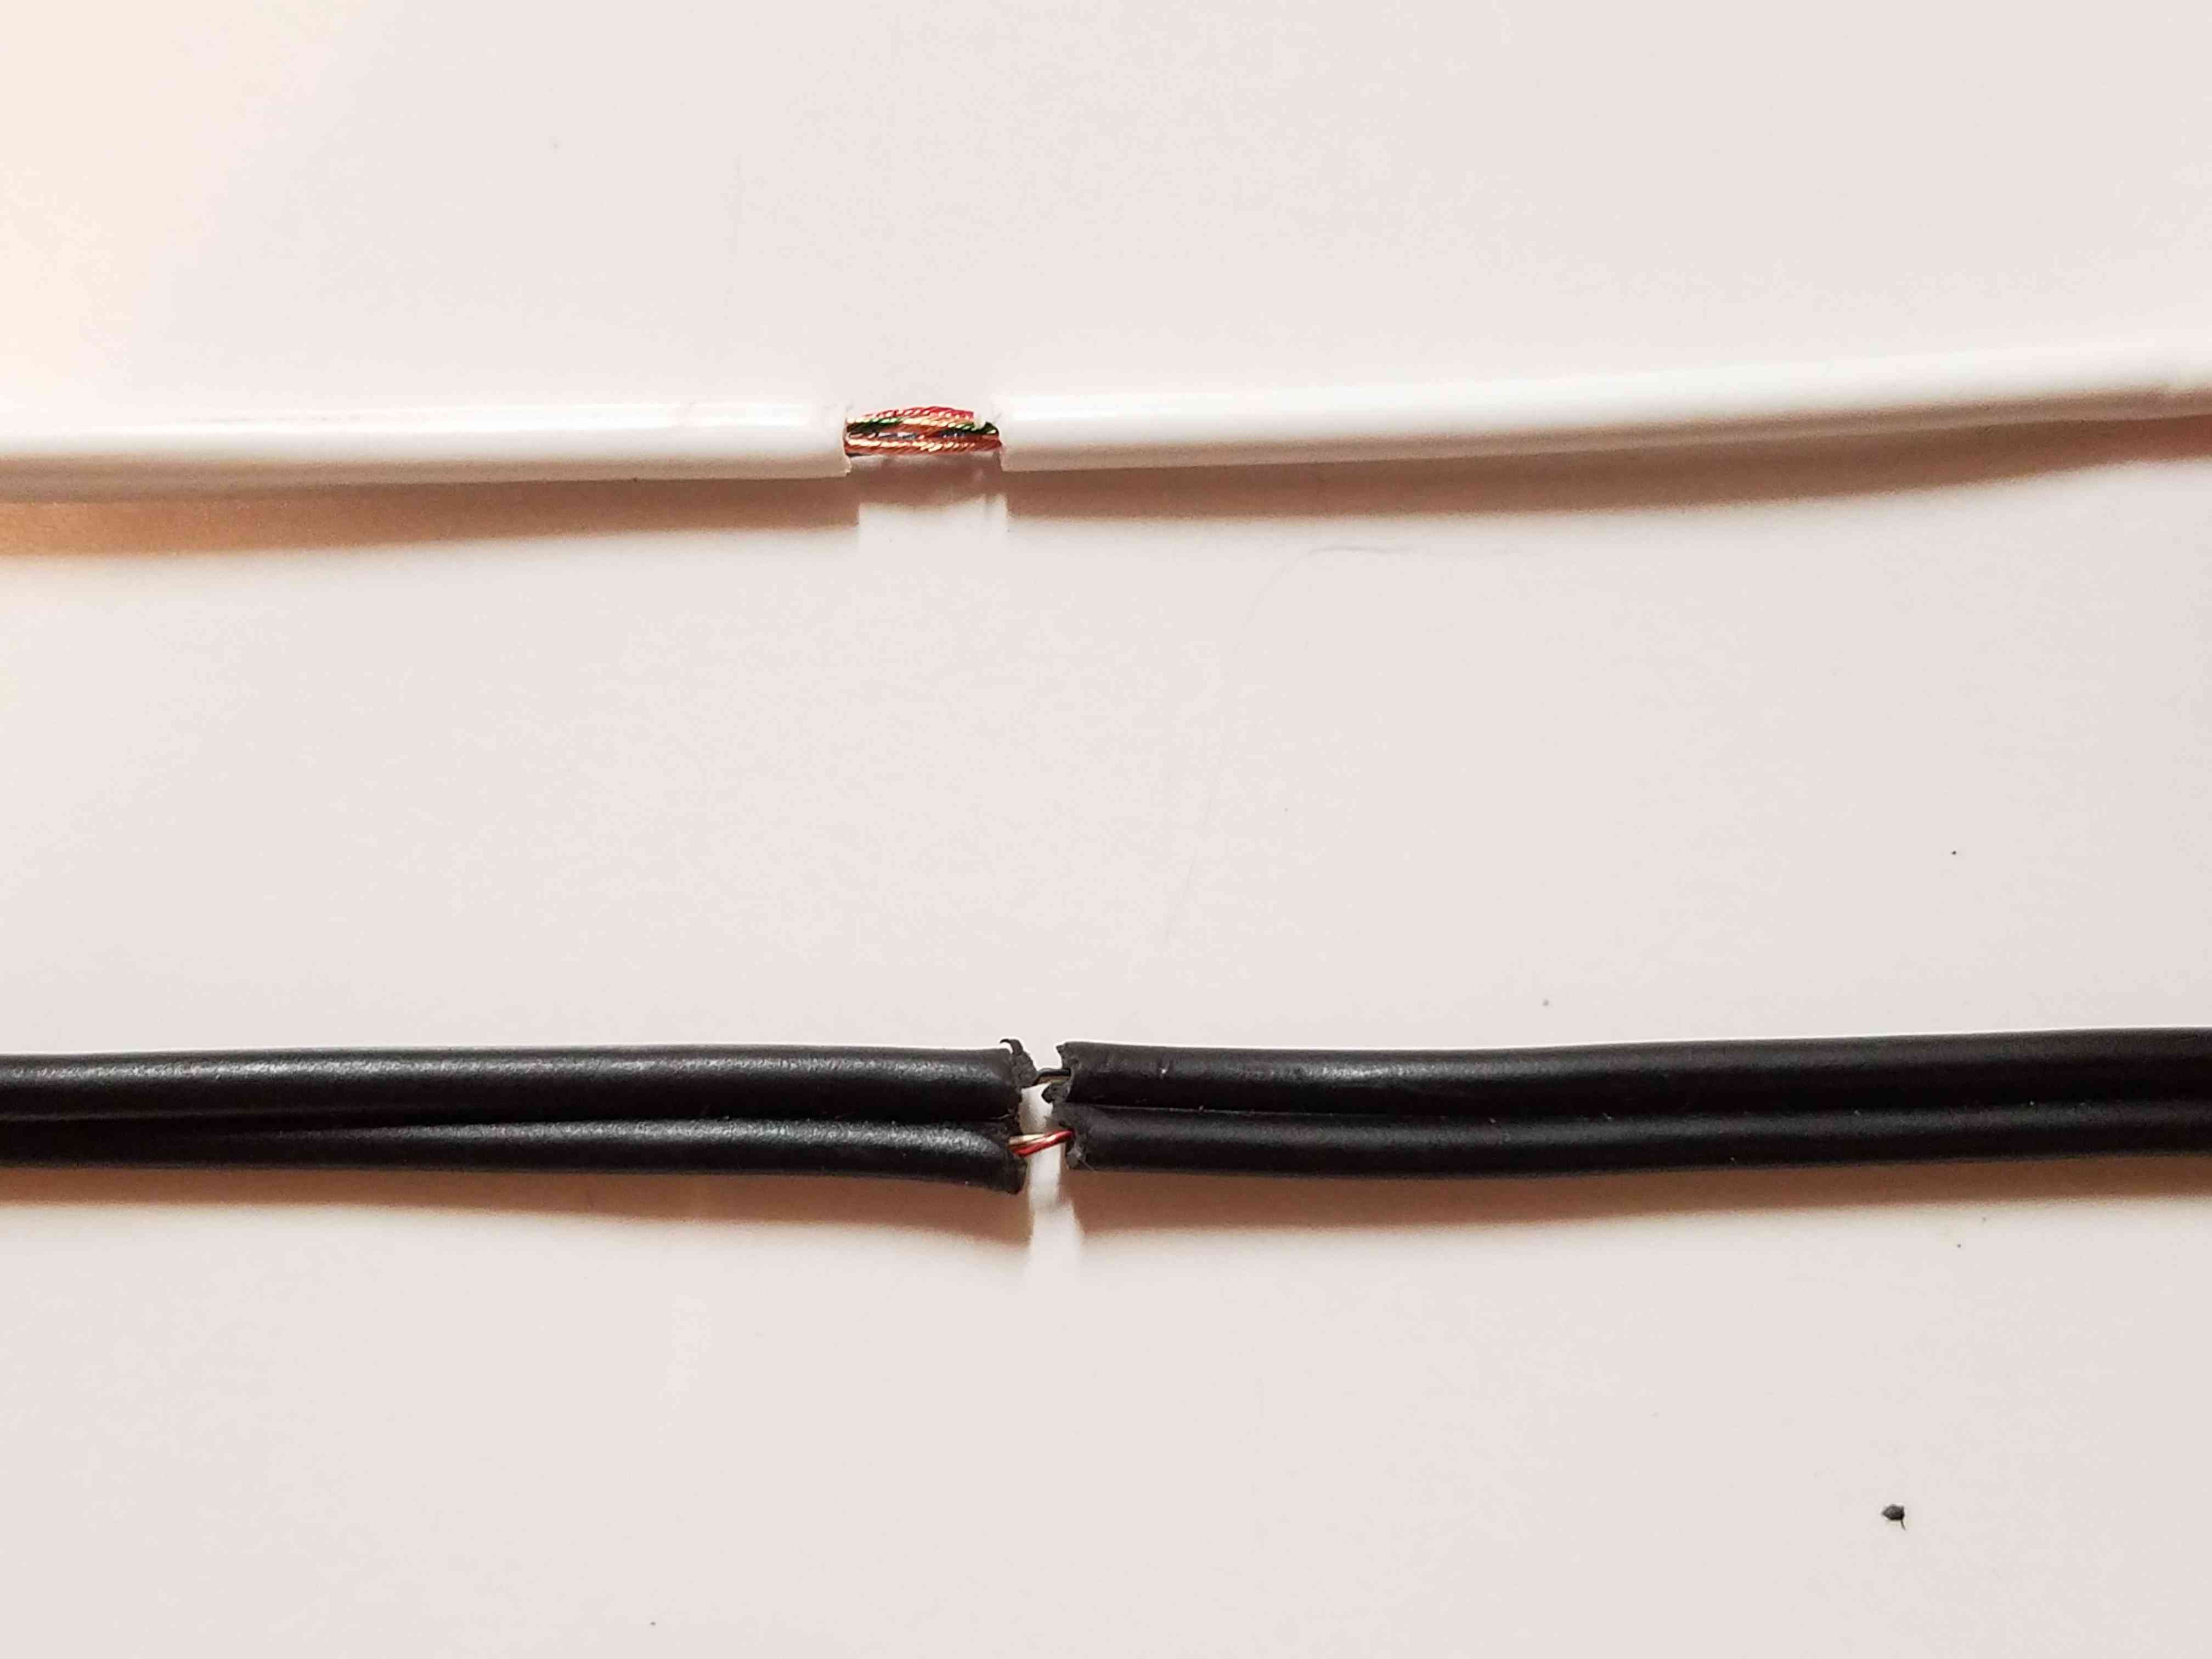 Opatrně odizolujte izolaci kabelu pomocí odizolovacích drátů nebo nože, abyste odhalili zlomený vodič.